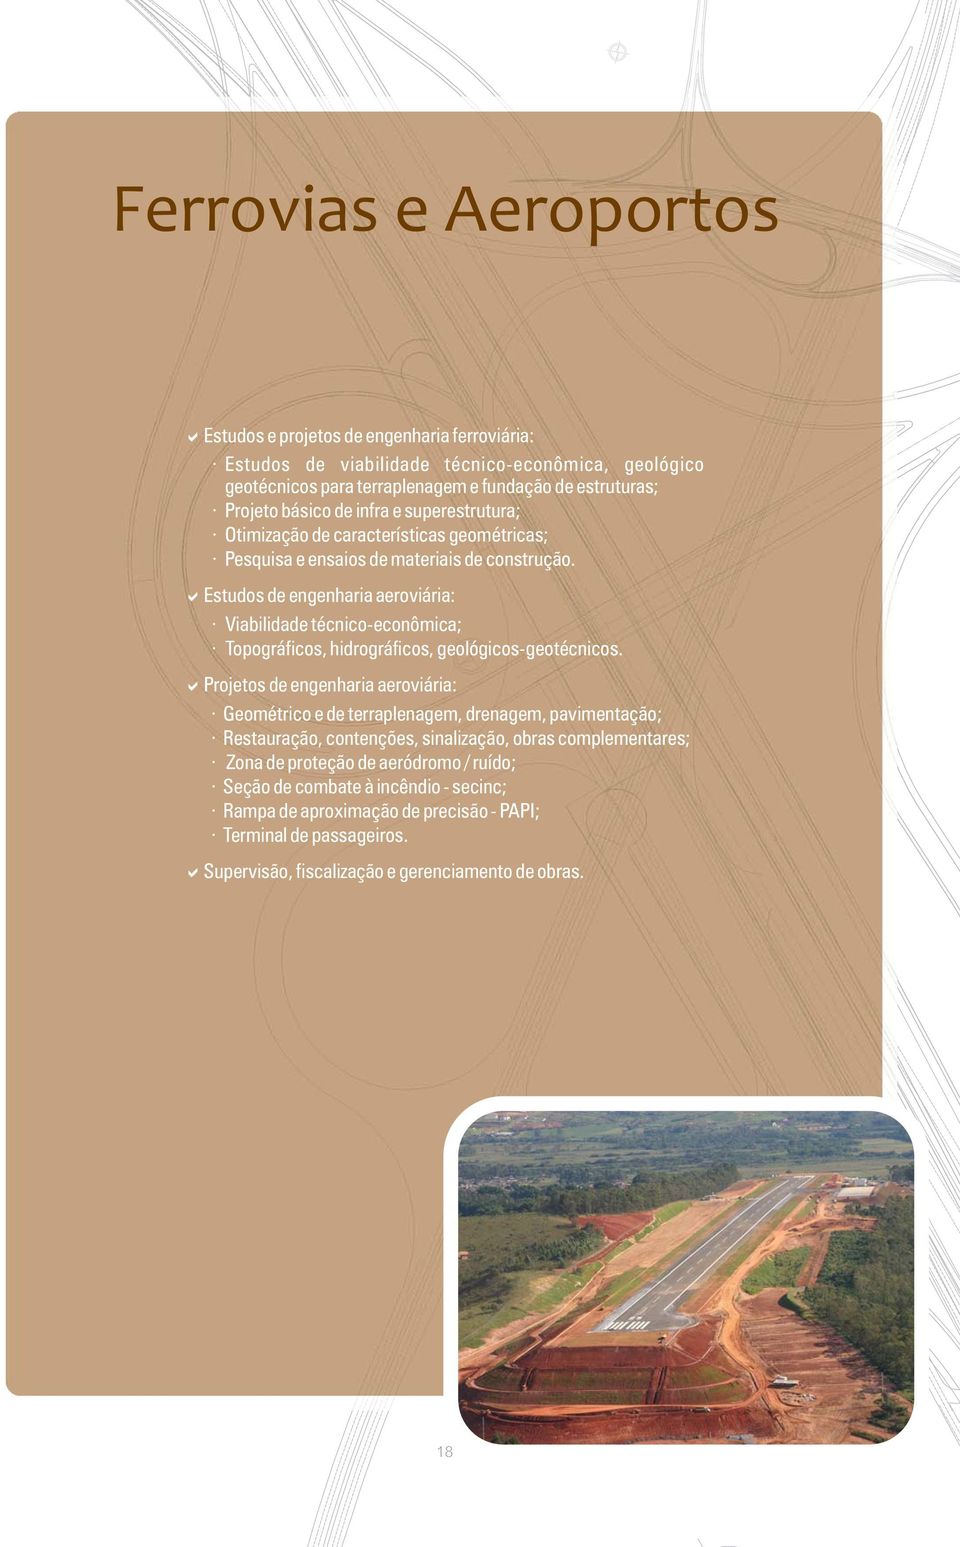 Estudos de engenharia aeroviária: Viabilidade técnico-econômica; Topográficos, hidrográficos, geológicos-geotécnicos.